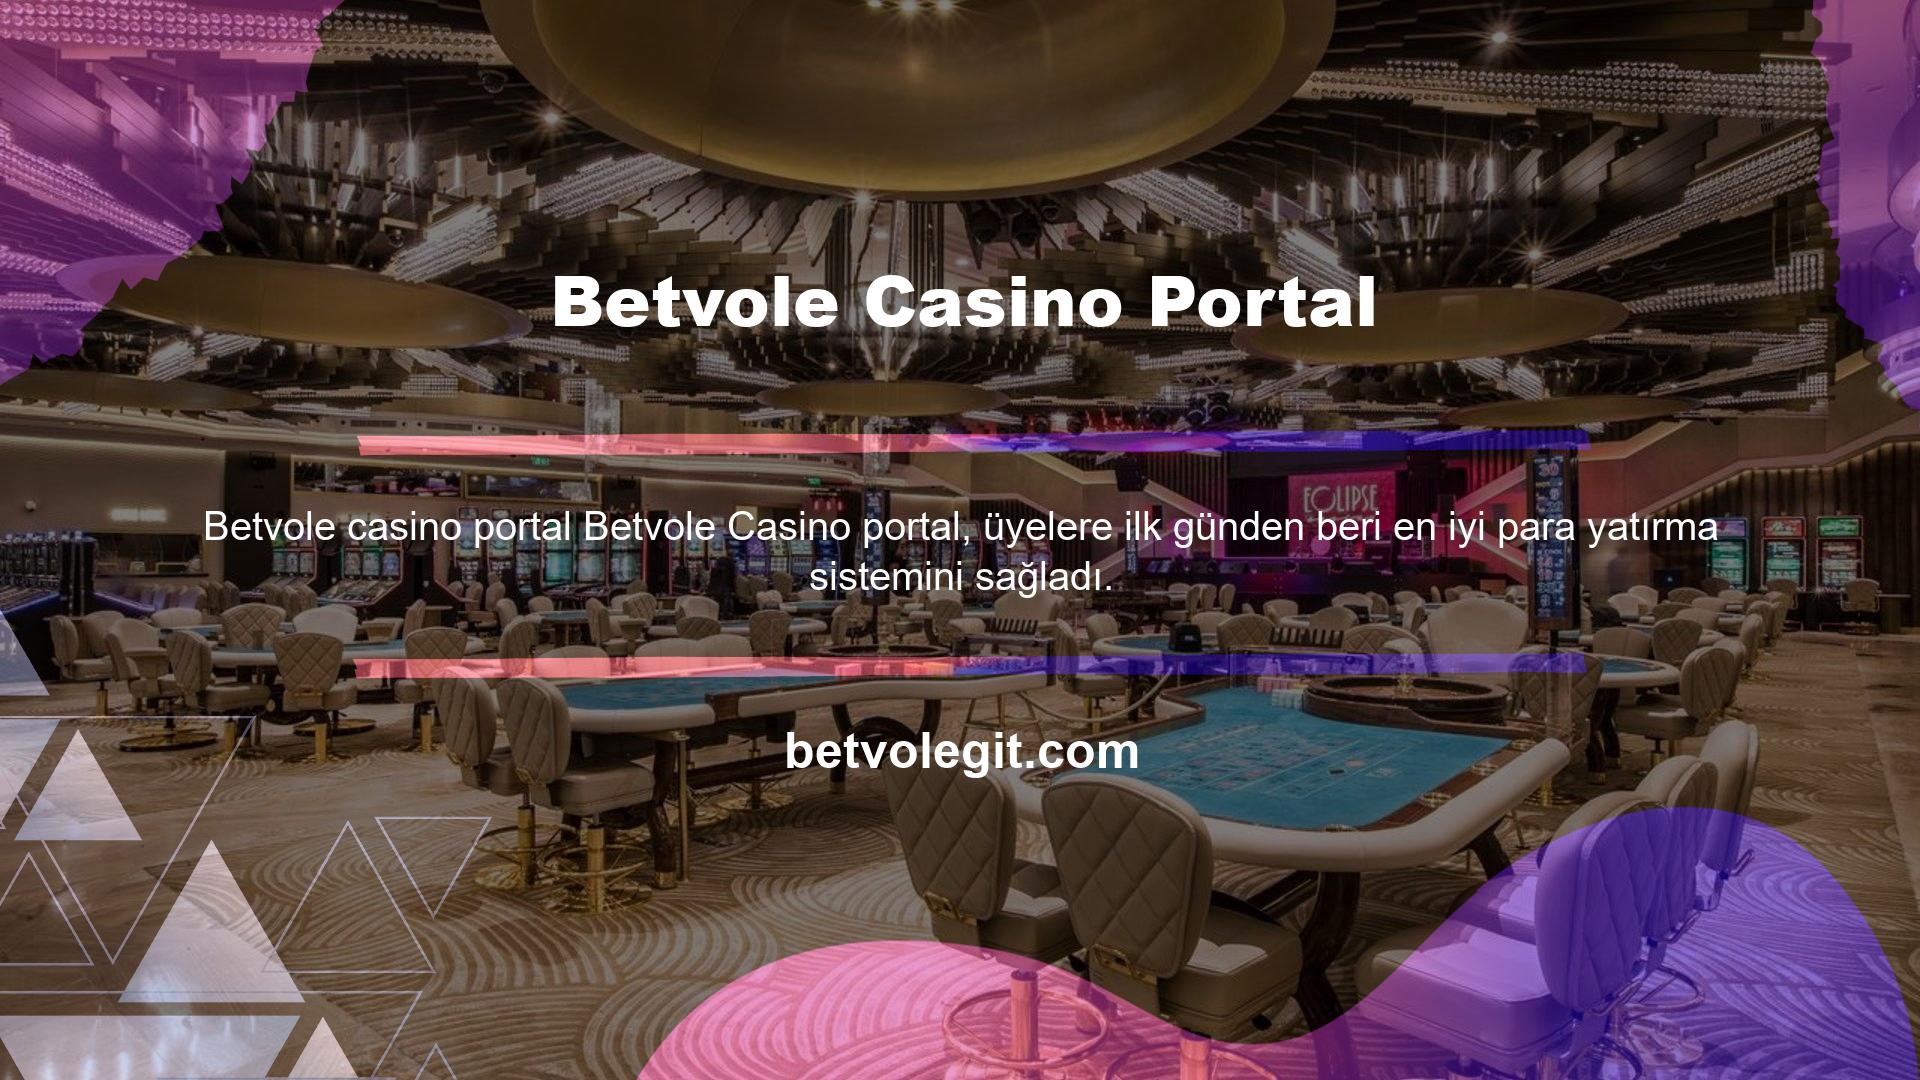 Canlı Casino Destek Hizmetleri tarafından sunulan hizmetler arasında para yatırma ve çekme işlemleri, kullanıcılar tarafından talep edilen destek seçeneklerinden biridir